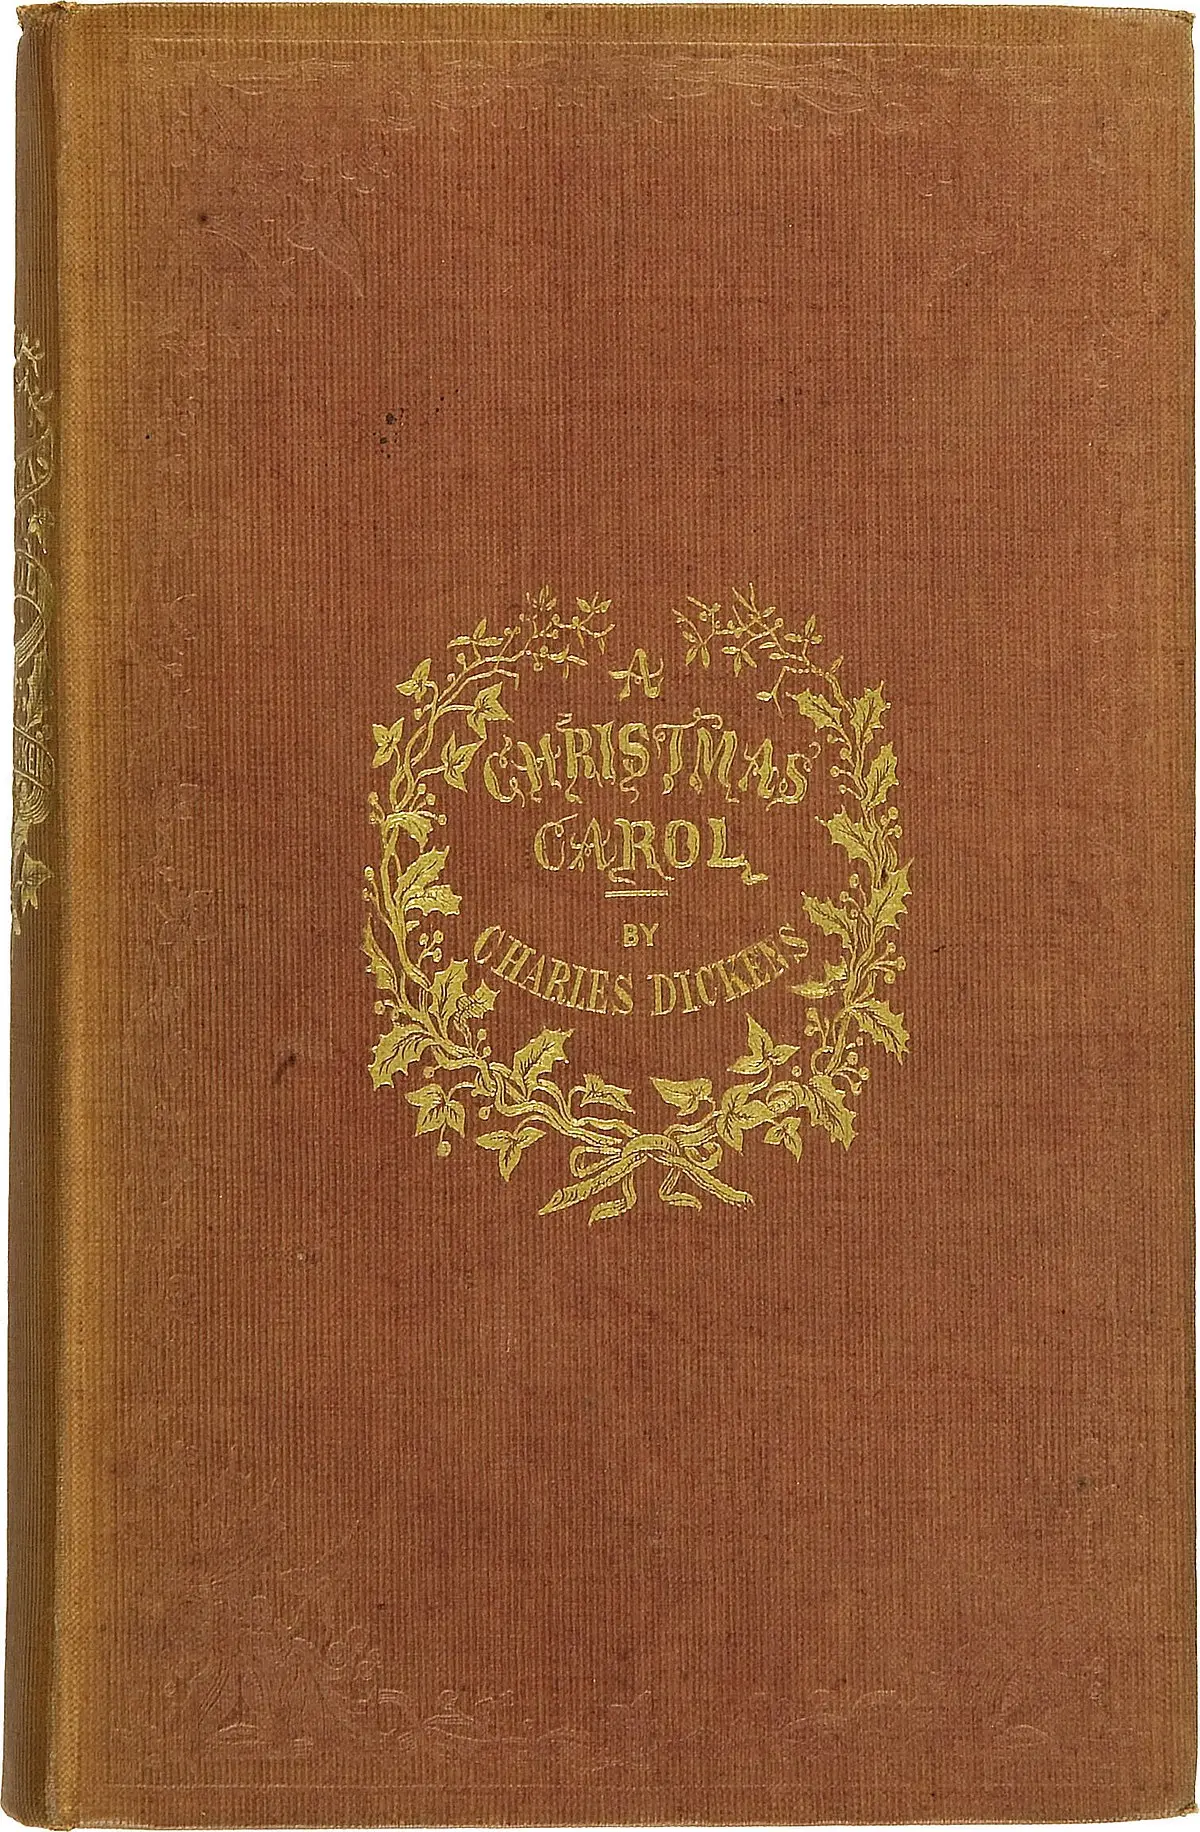 cuento de navidad ray bradbury resumen - Qué género literario es el cuento de navidad de Ray Bradbury